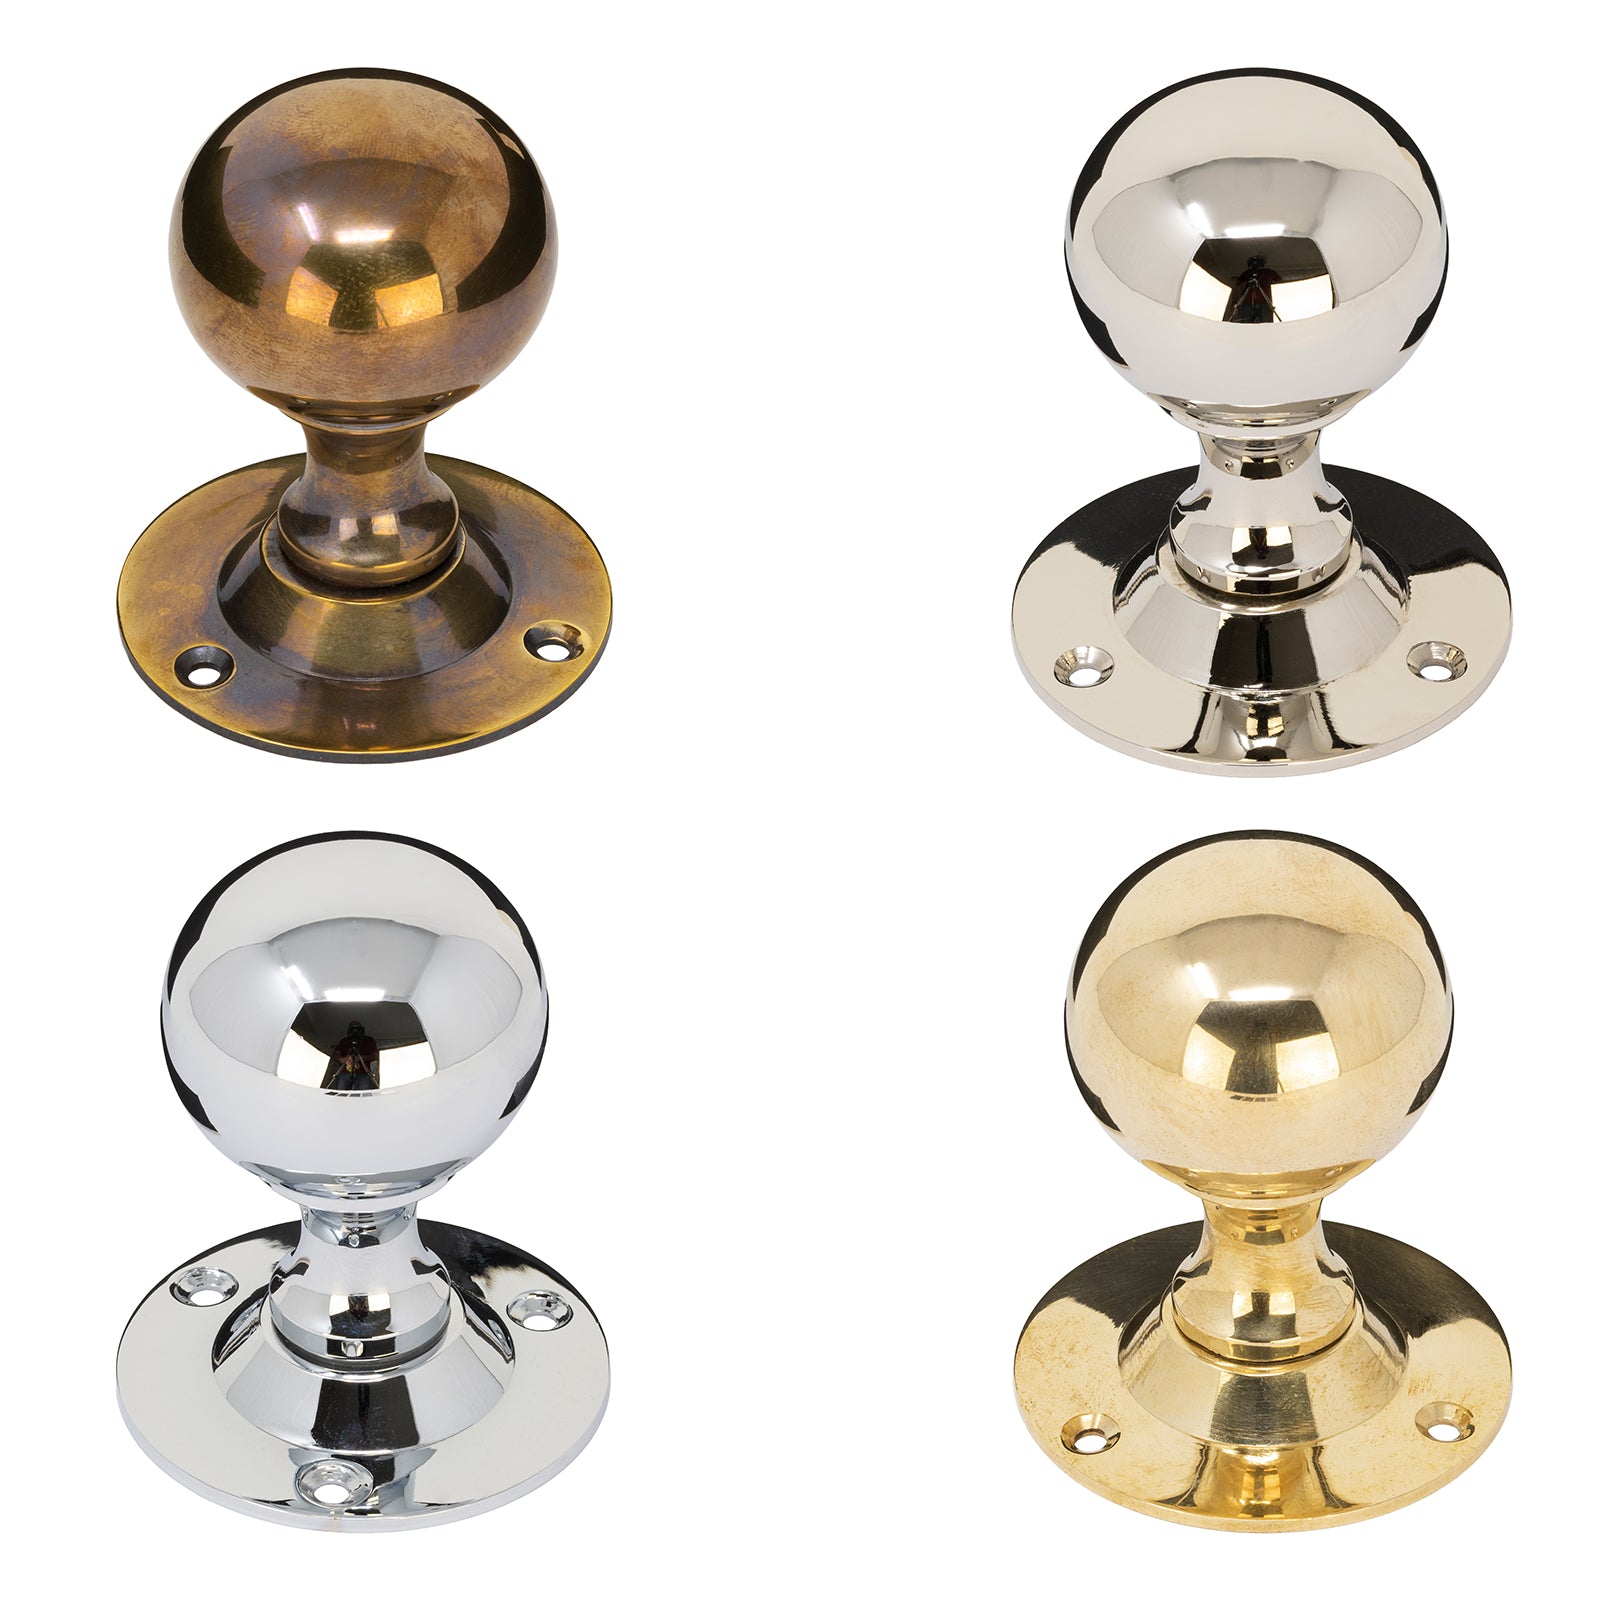 Round Brass Door Knobs also known as solid brass door knobs